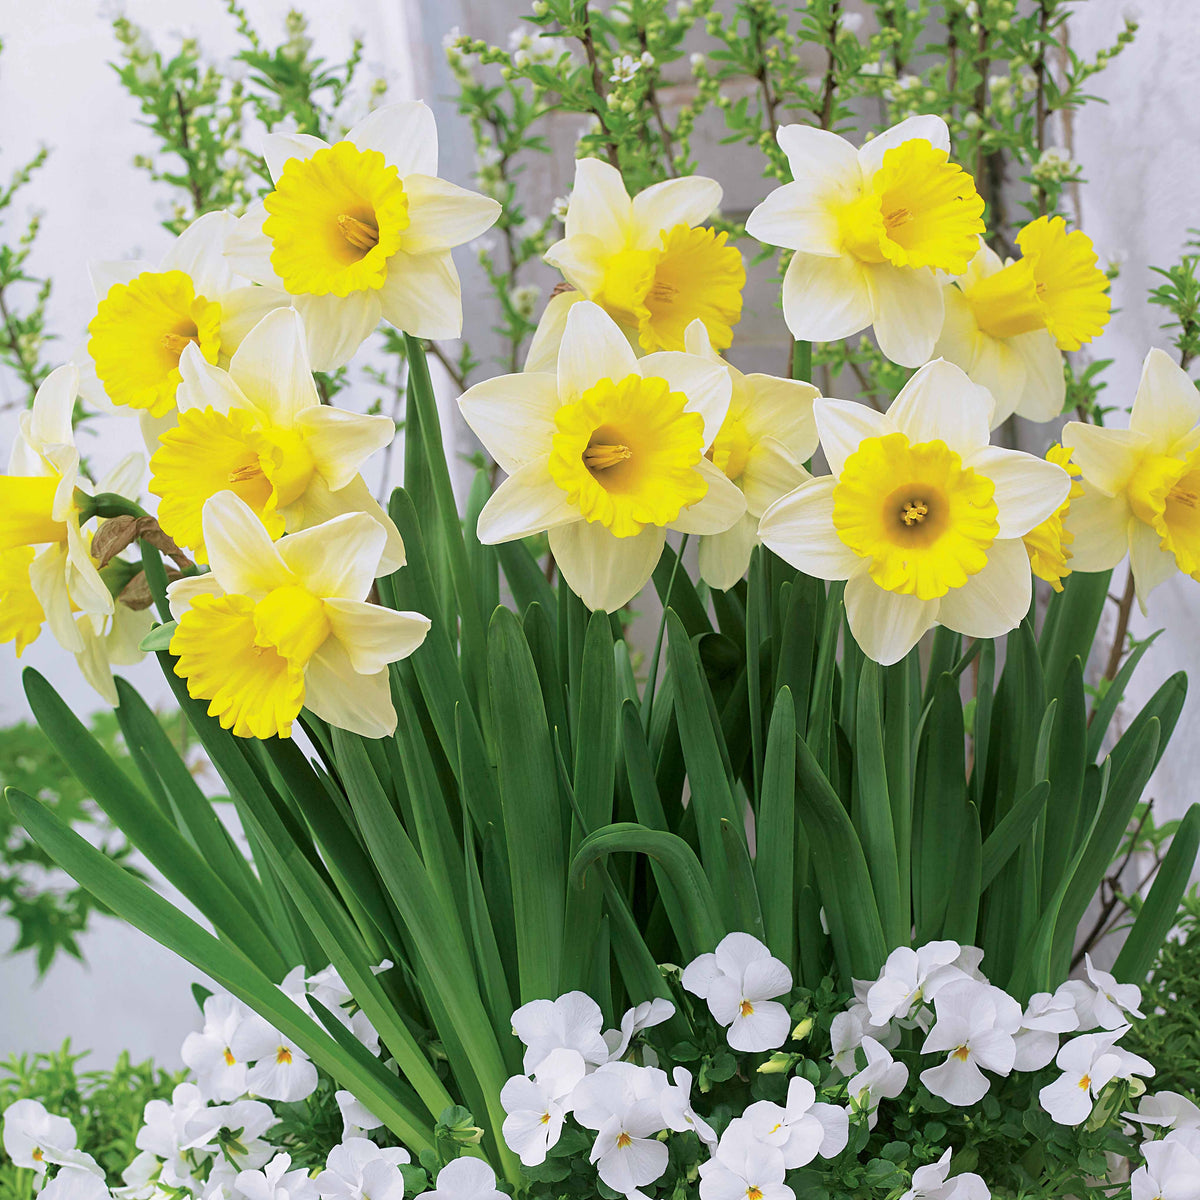 10 Narcisses Goblet - Narcissus goblet - Plantes